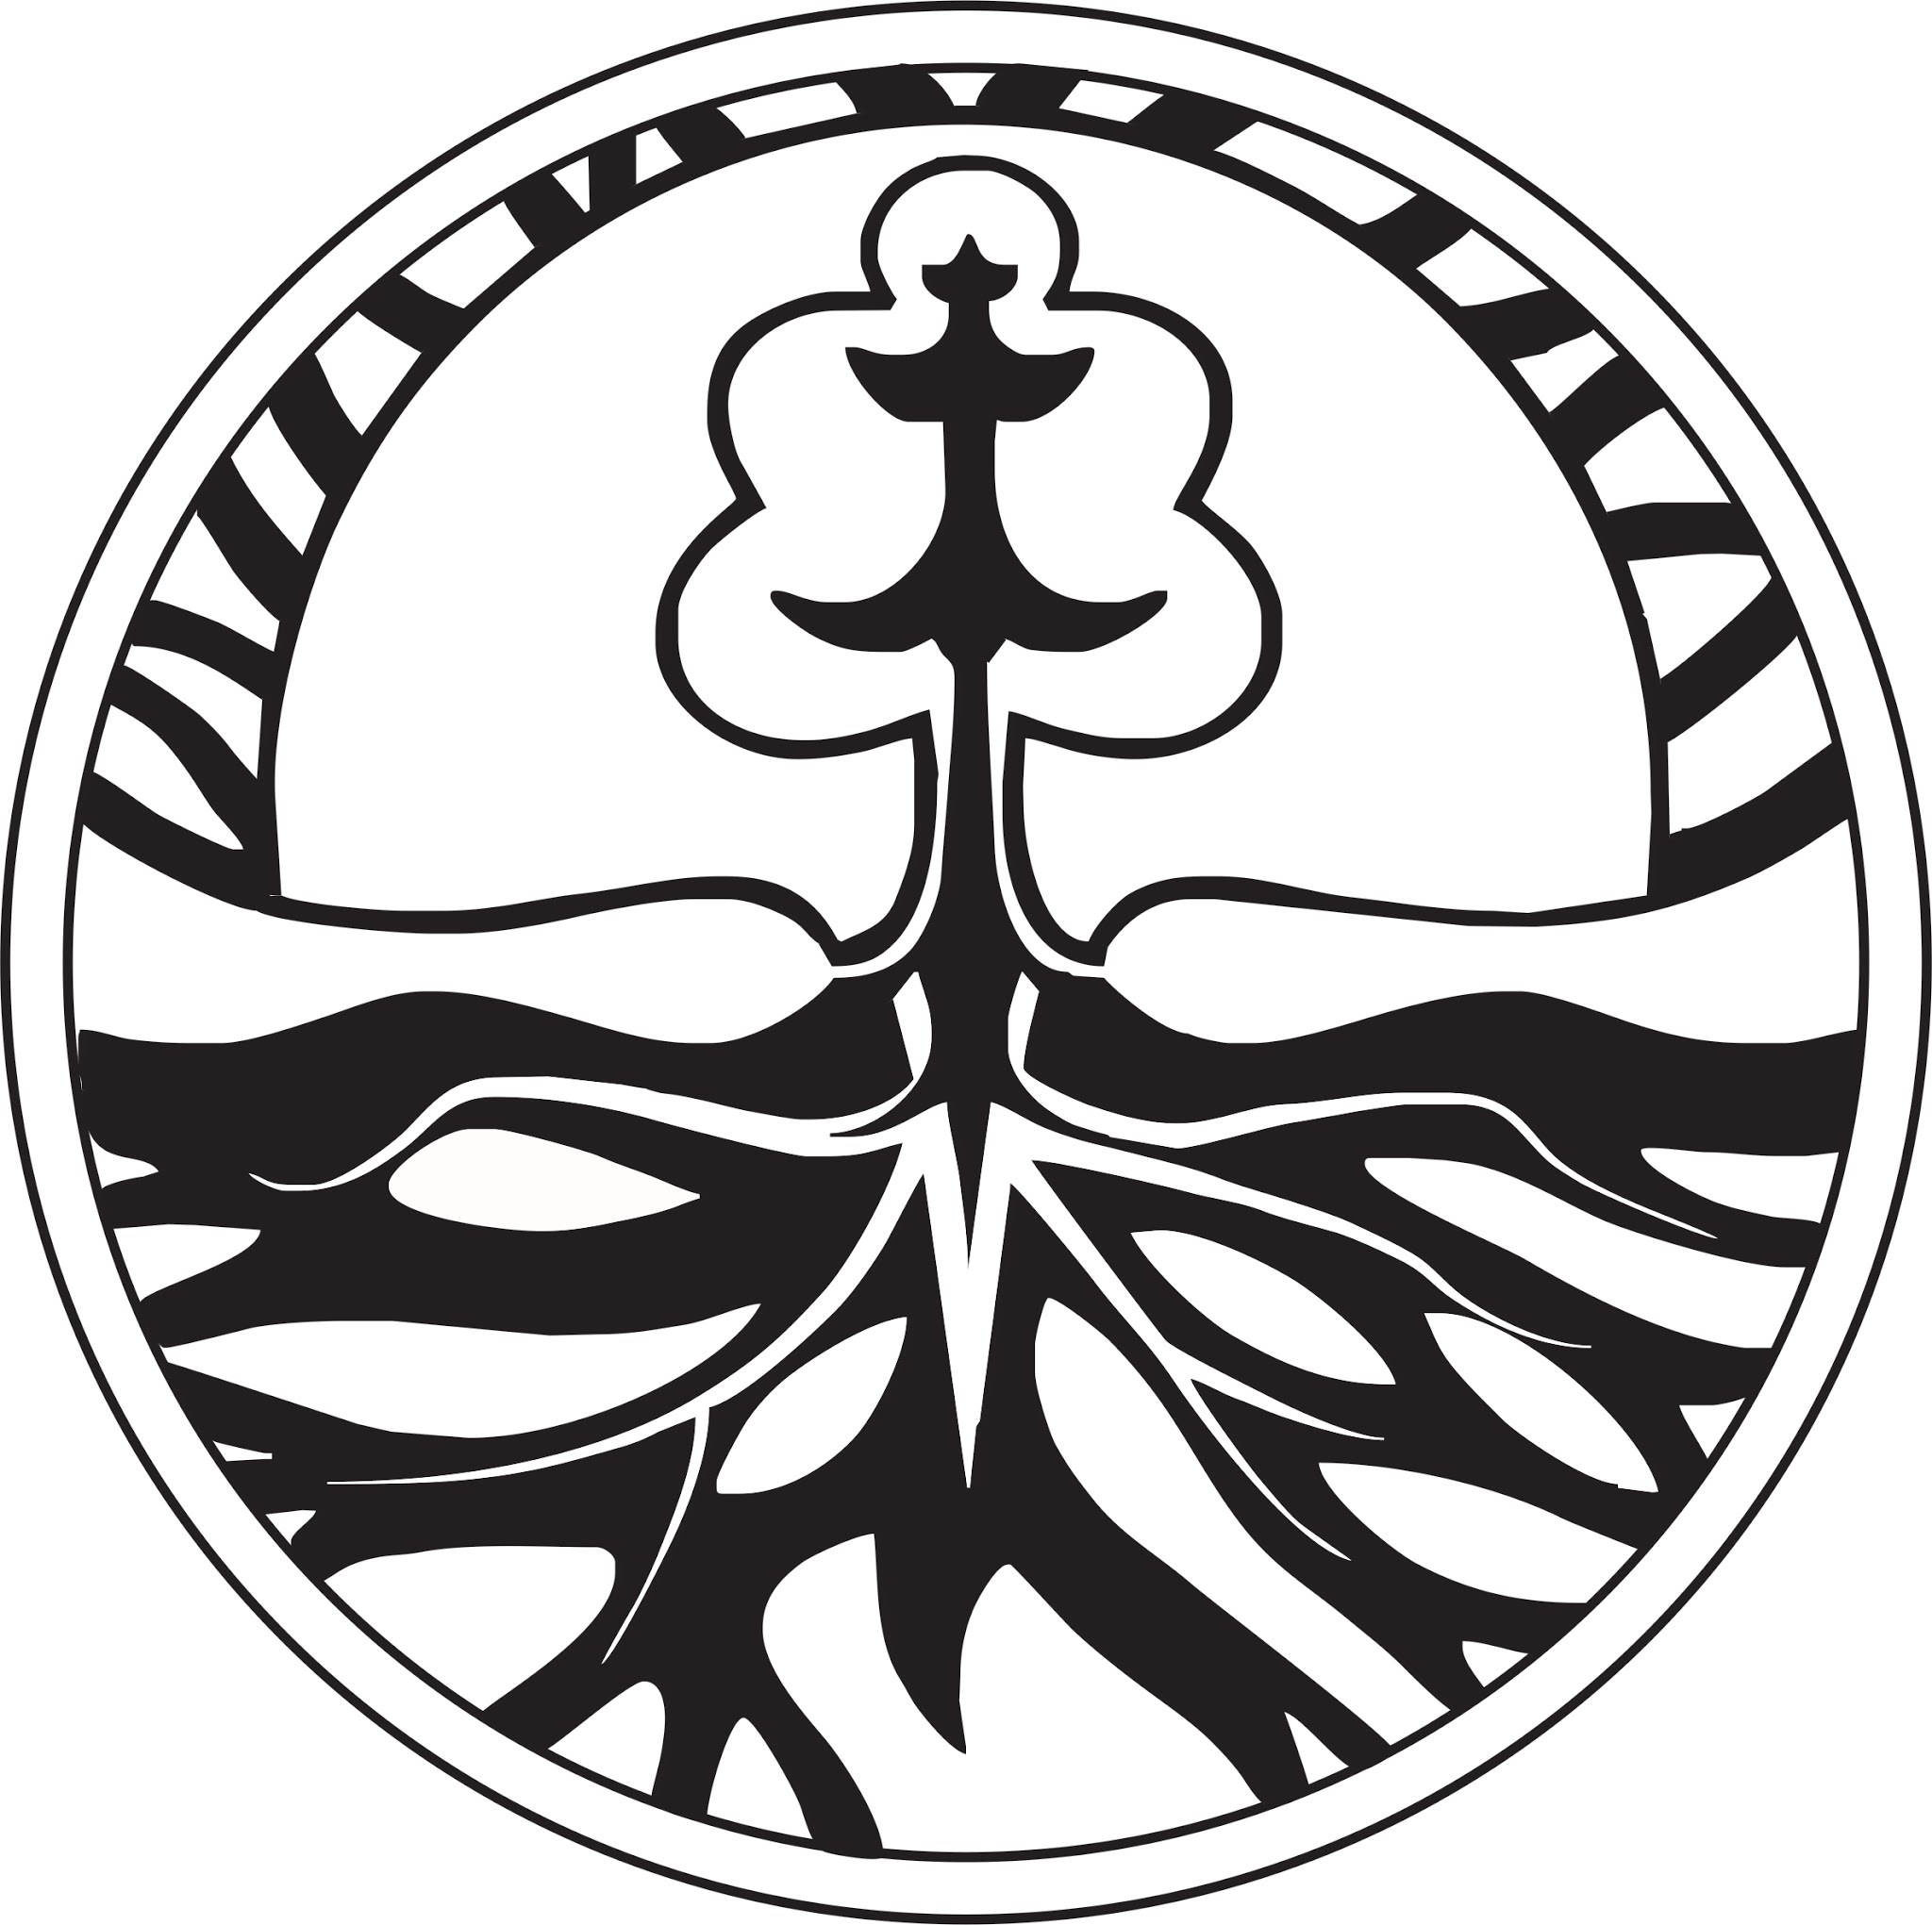 Logo KLHK Hitam Putih